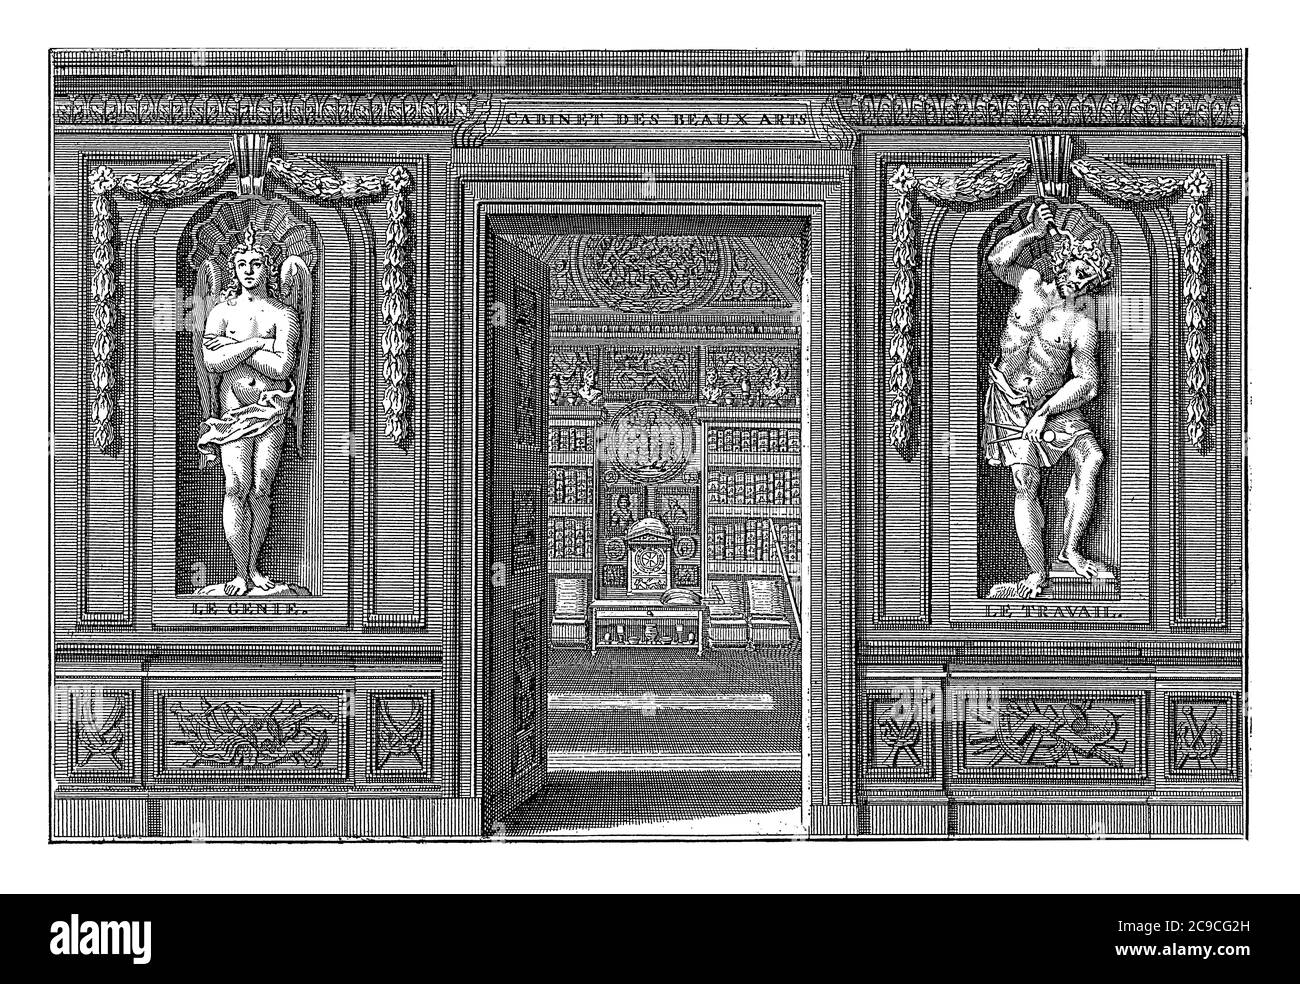 Offene Tür zu einem Kunstraum mit Bildern der Personifikationen des Genius und Arbeit auf beiden Seiten, Vintage-Gravur. Stockfoto